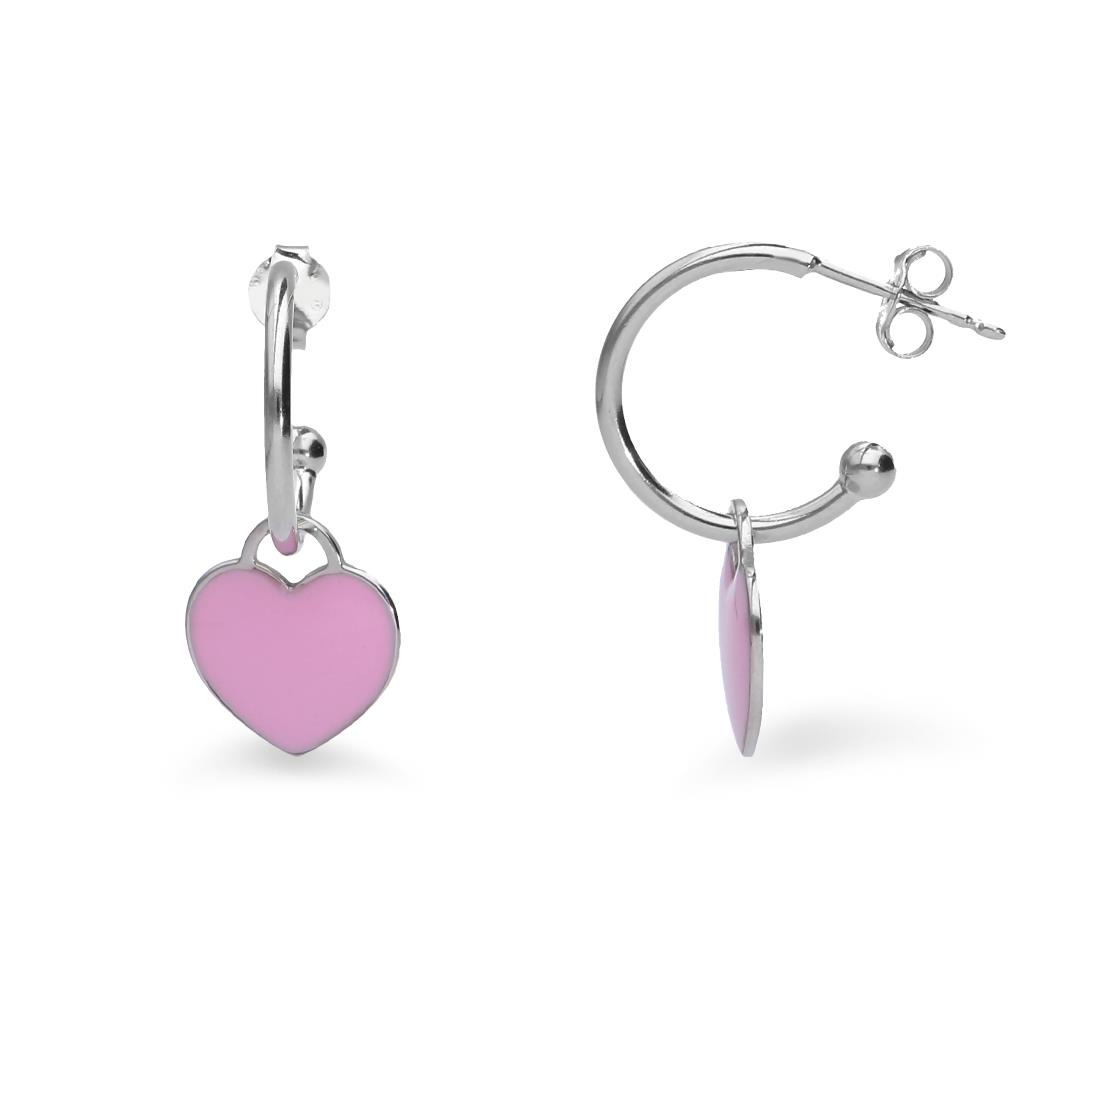 Silver hoop earrings with pink heart - ALFIERI & ST. JOHN 925